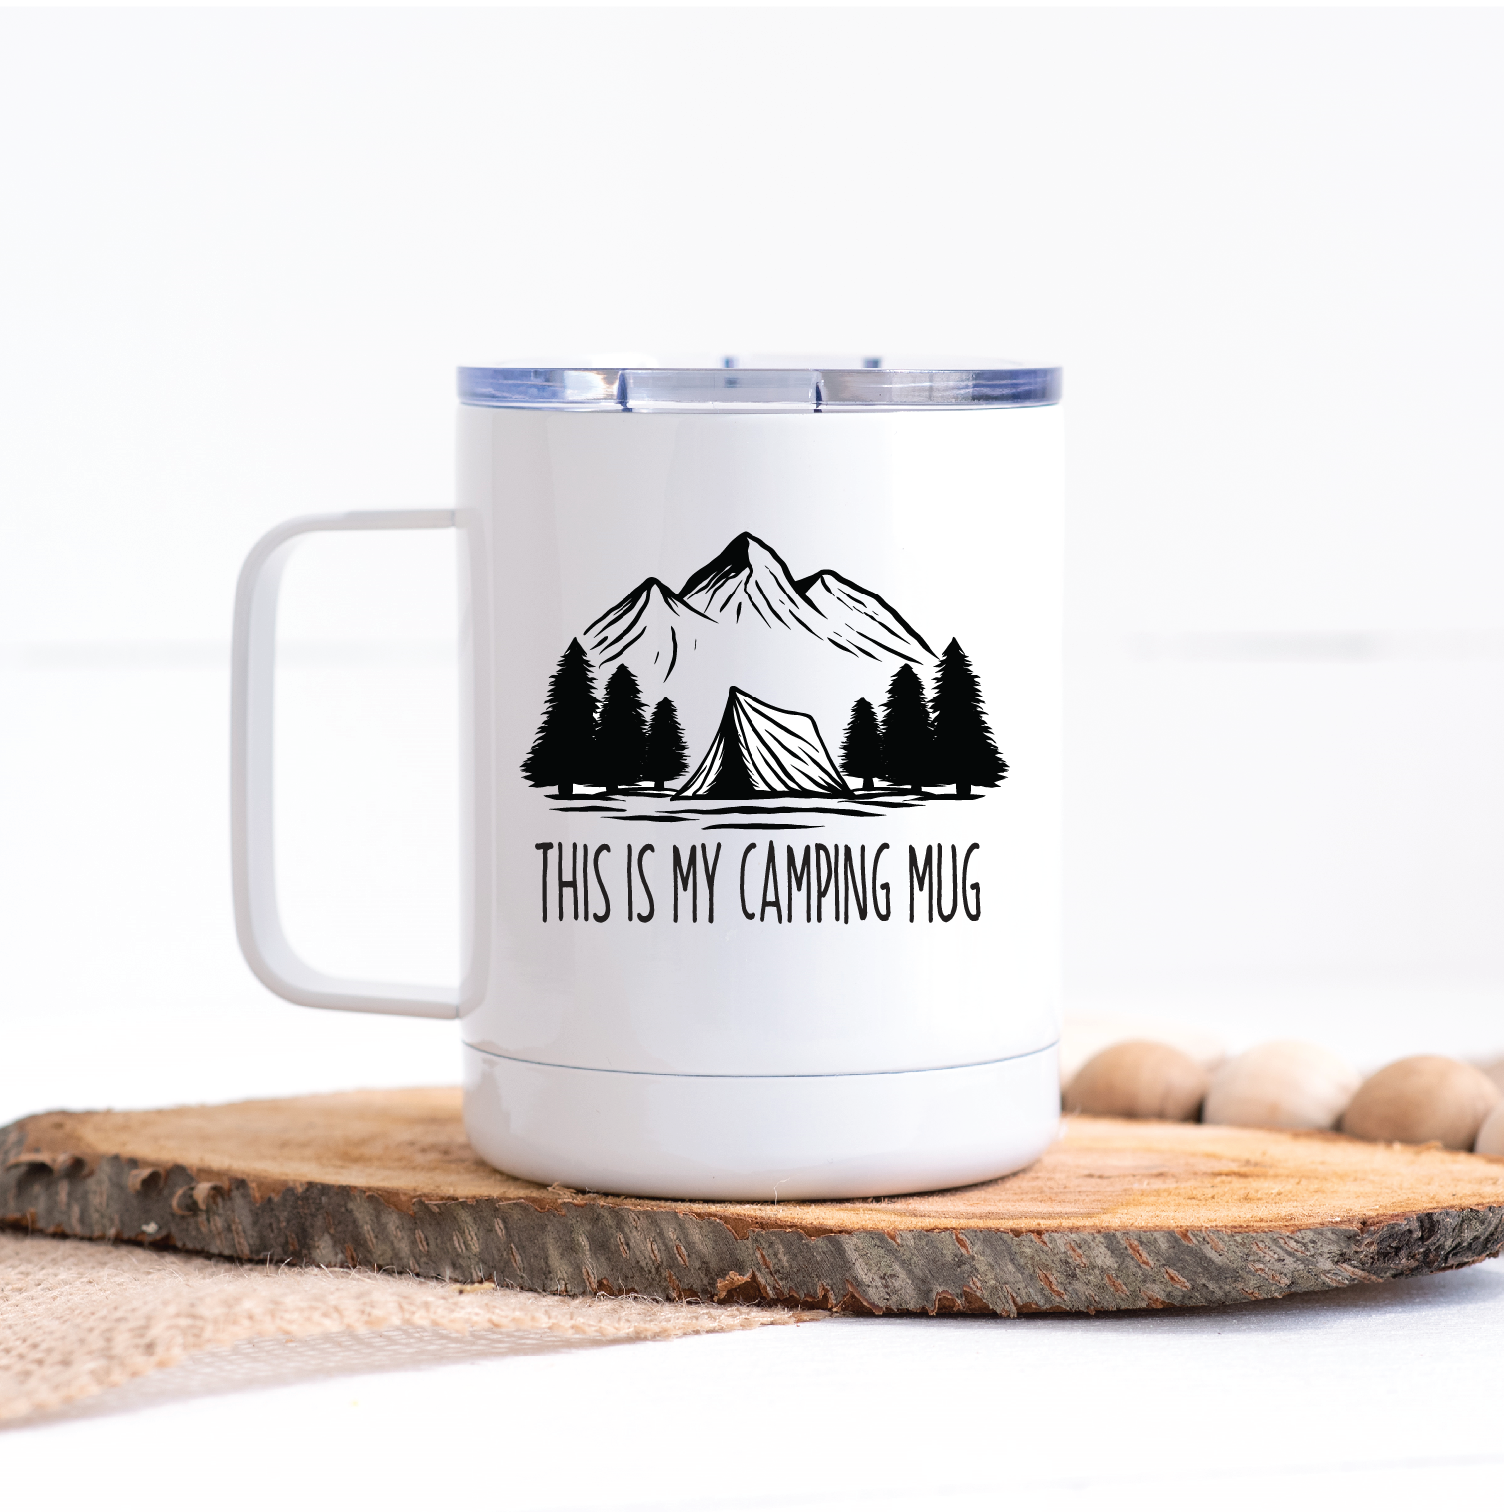 This is My Camping Mug Travel Mug